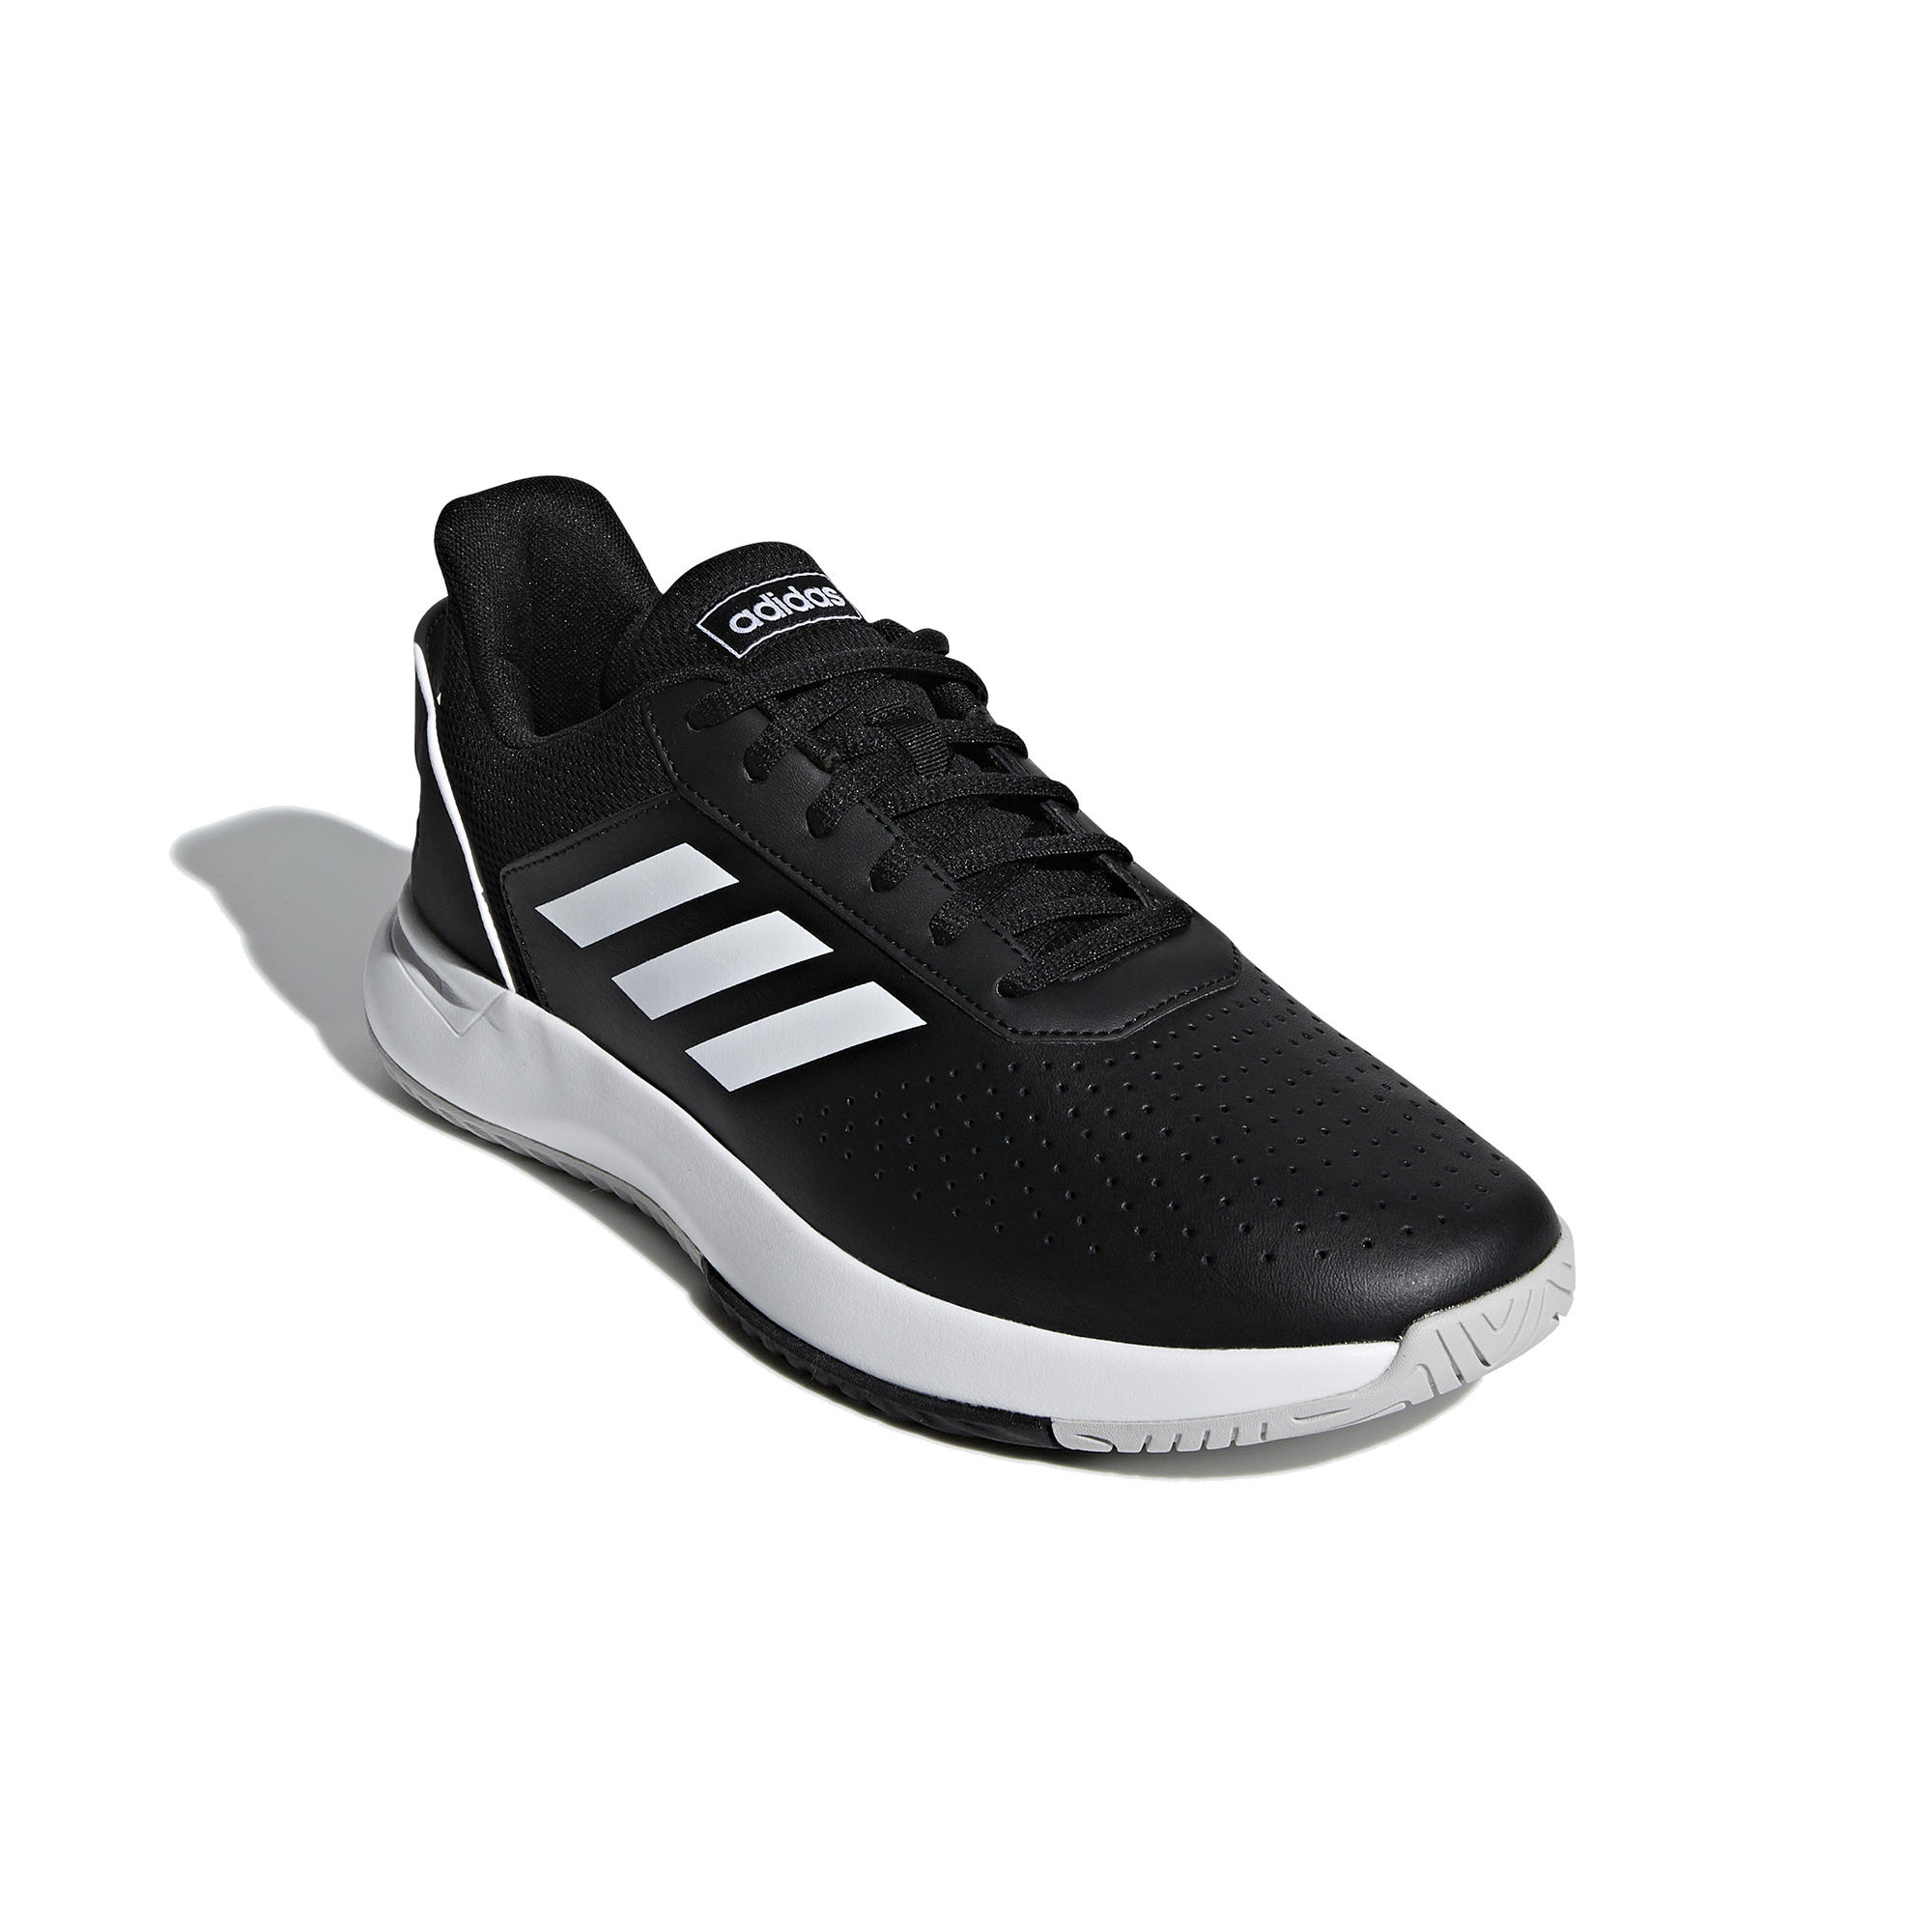 Comprar Zapatillas de tenis Adidas| Decathlon